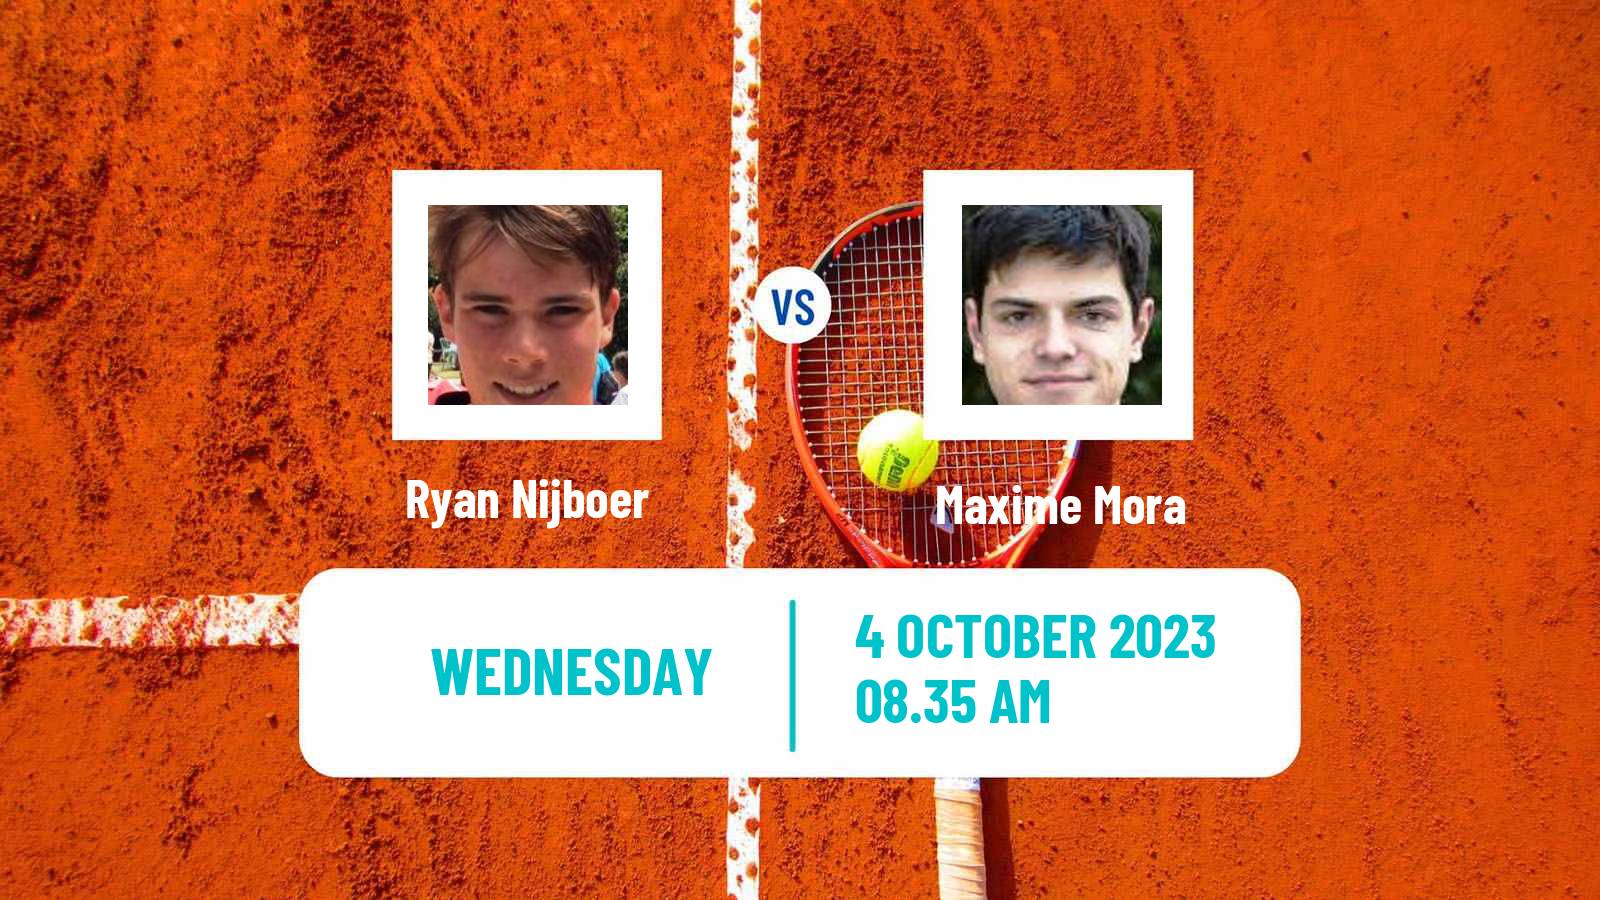 Tennis ITF M25 Zaragoza Men Ryan Nijboer - Maxime Mora